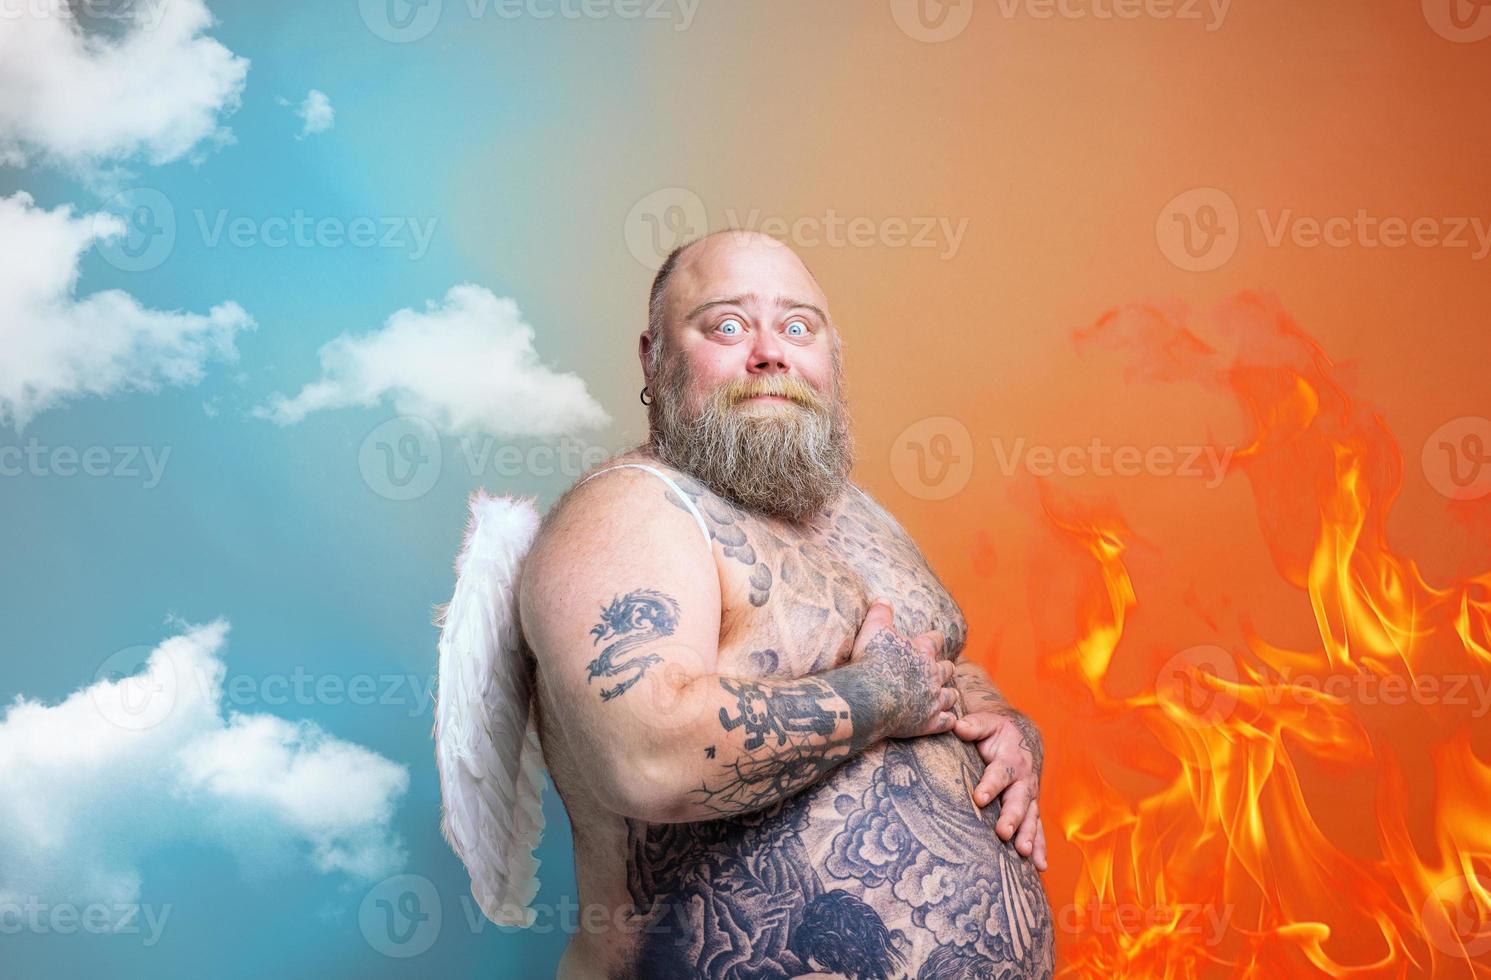 dik versteld staan Mens met baard , tatoeages en Vleugels handelingen Leuk vinden een engel foto